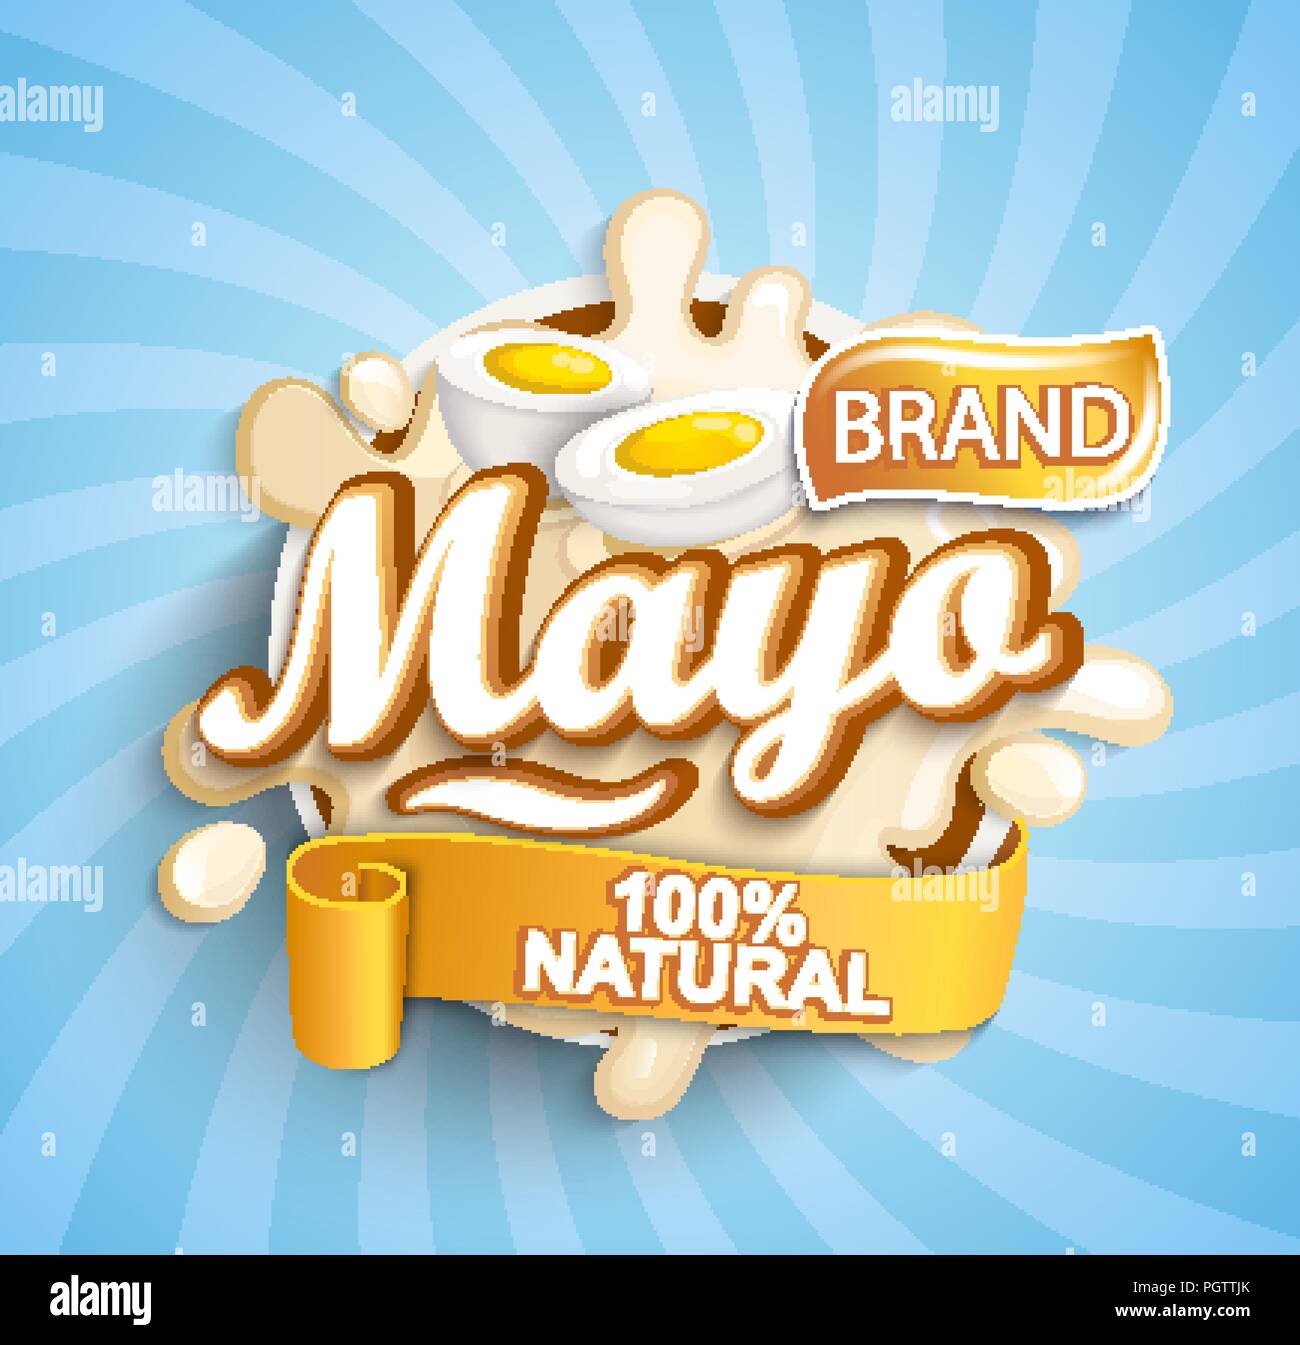 Freschi e naturali etichetta mayonese schizzi sul sunburst sfondo per il vostro marchio, logo, template, etichetta, emblema per negozi di generi alimentari, negozi, il confezionamento e la pubblicità. Illustrazione Vettoriale. Illustrazione Vettoriale